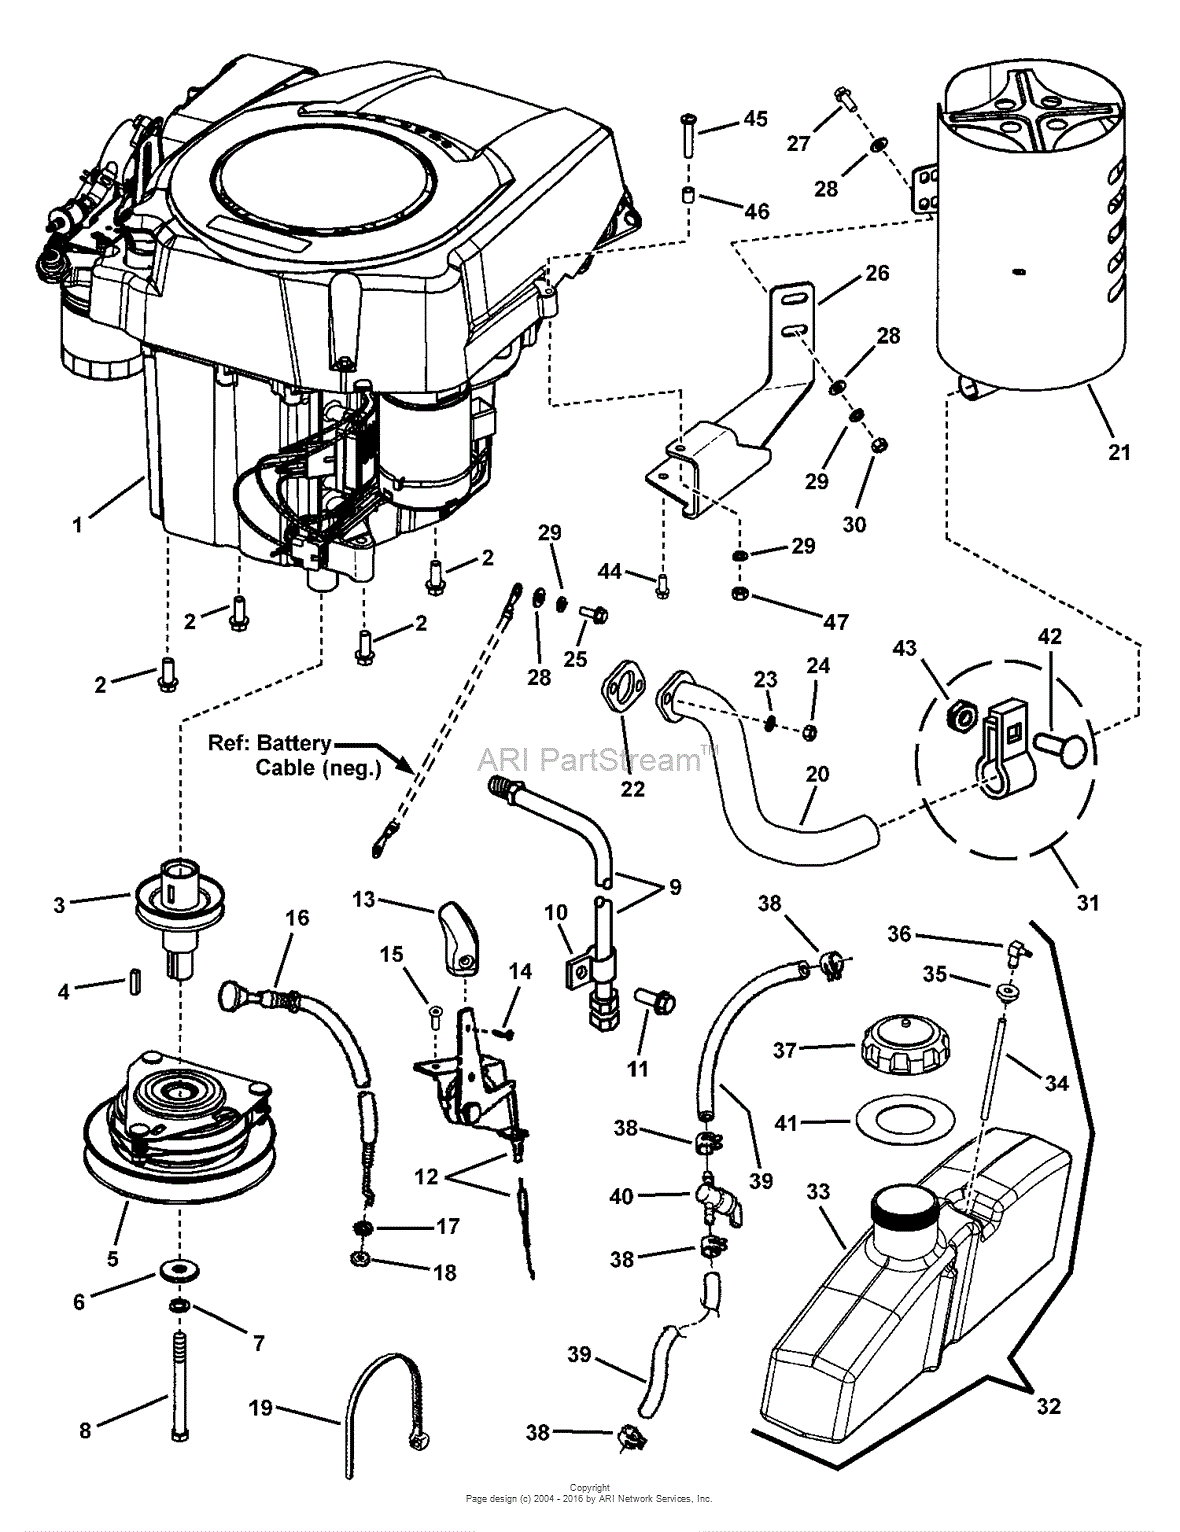 Kohler Command 2 7 Engine Schematics